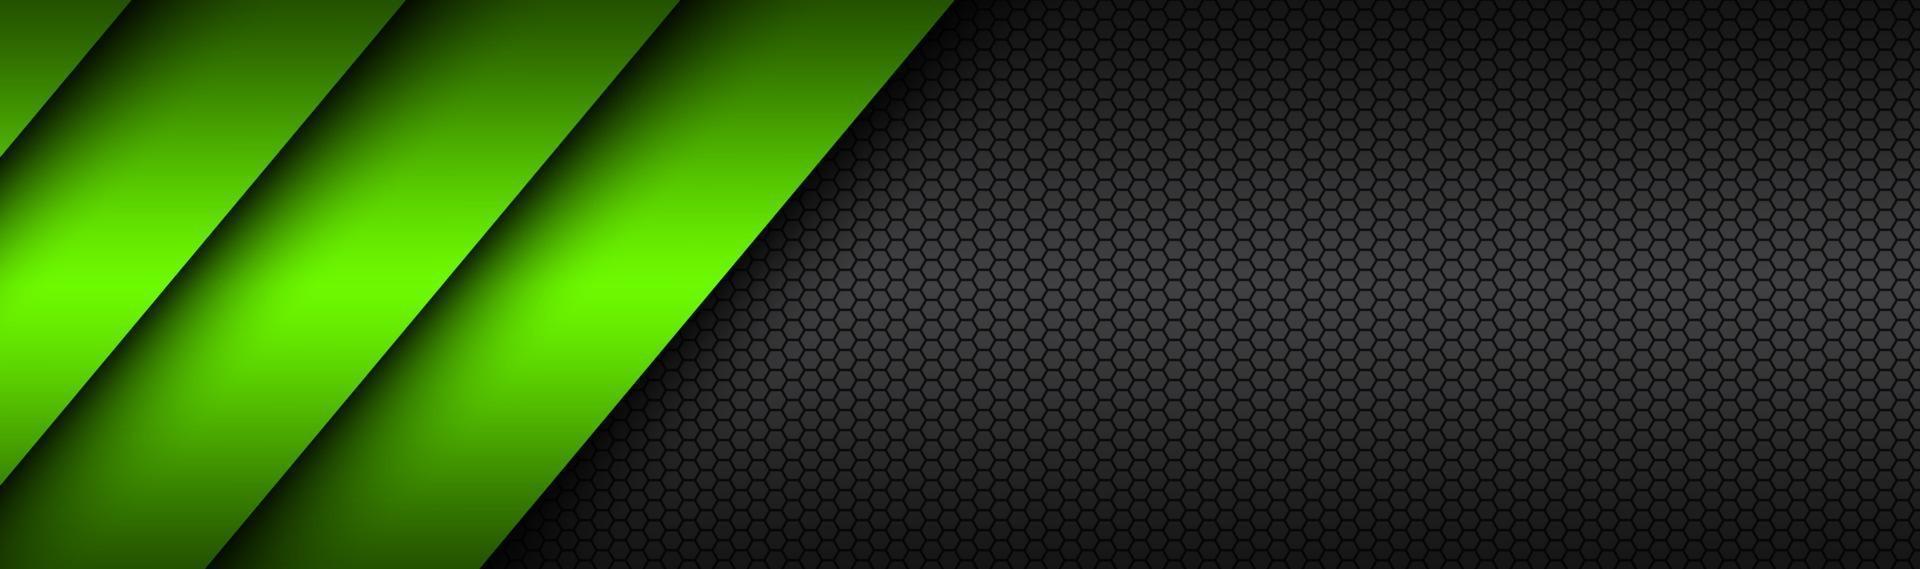 intestazione vettoriale materiale moderno nero e verde con un banner di design a maglia esagonale con griglia poligonale e spazio vuoto per il tuo logo design del sito web astratto